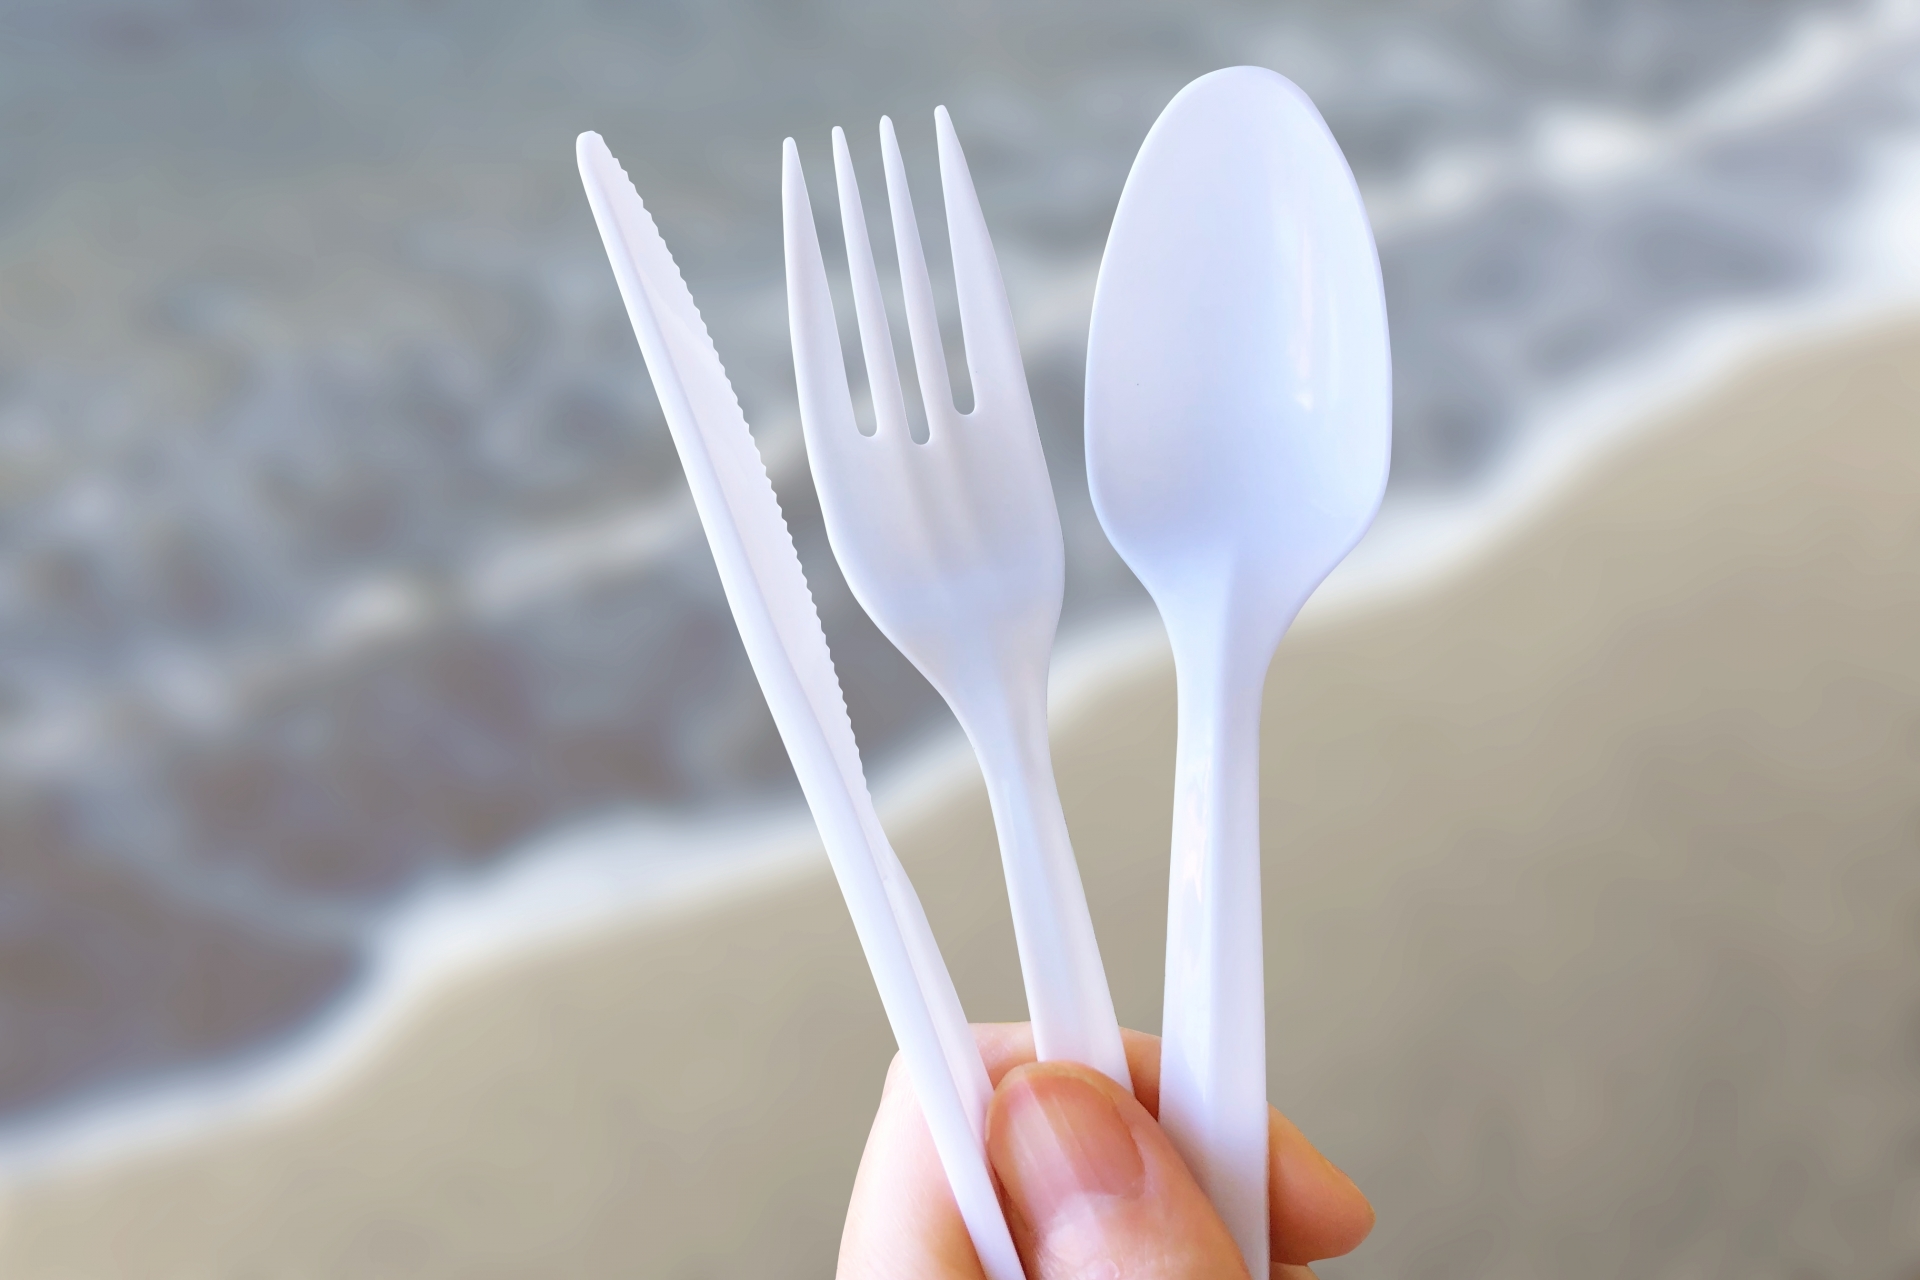 hand holding plastic utensils in front of ocean